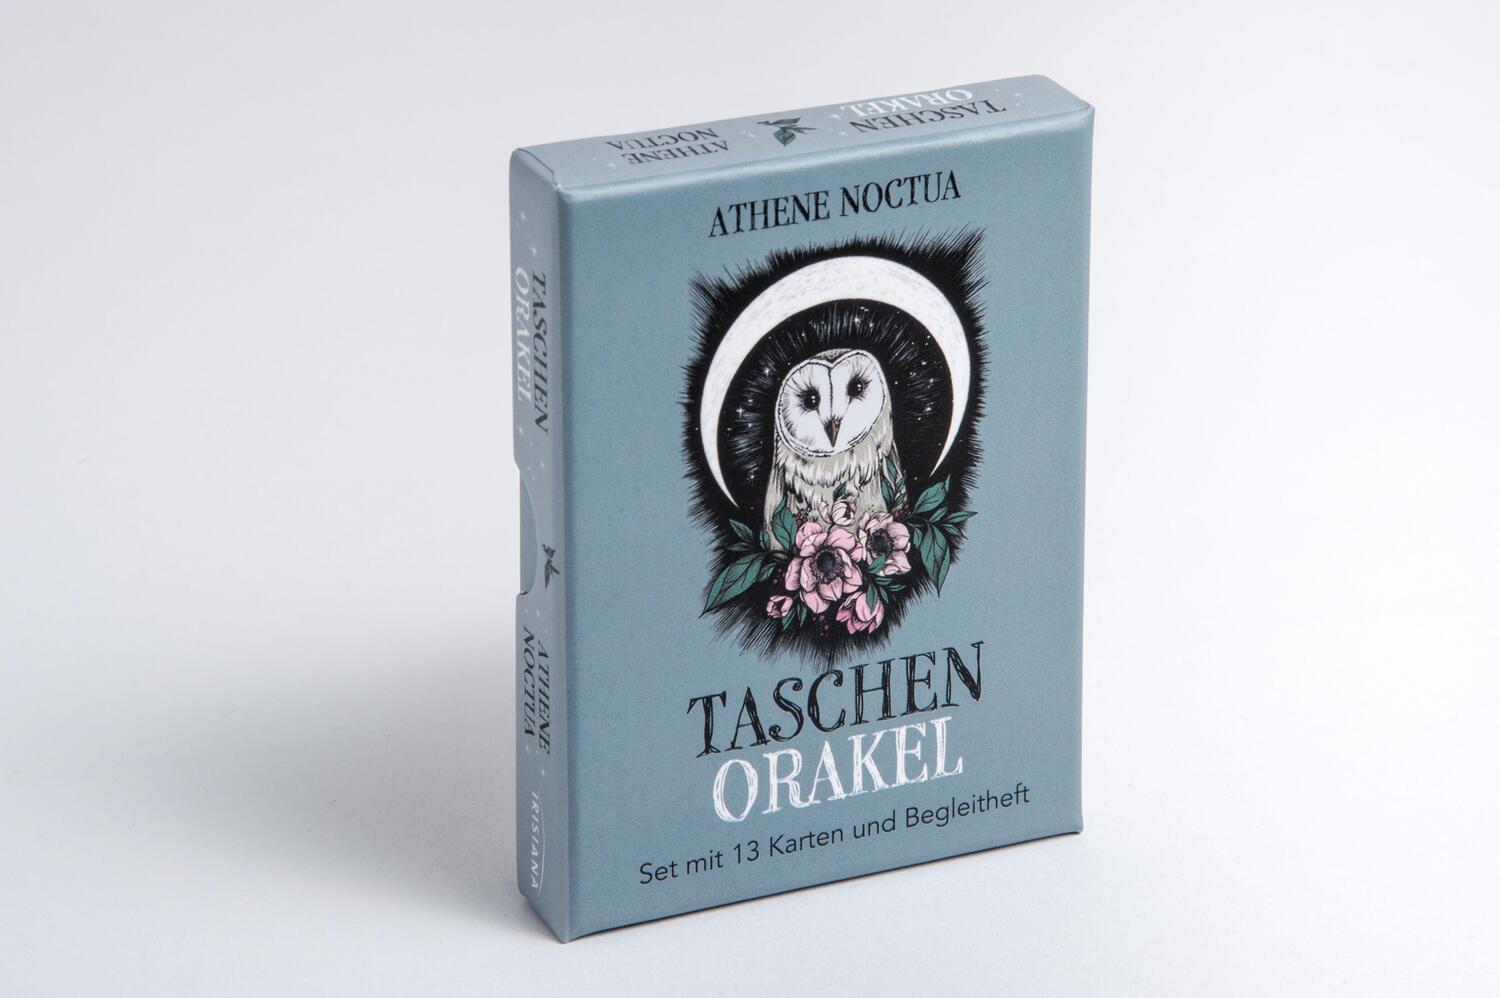 Bild: 4250939900155 | Taschen-Orakel | Set mit 13 Karten und Begleitheft | Athene Noctua